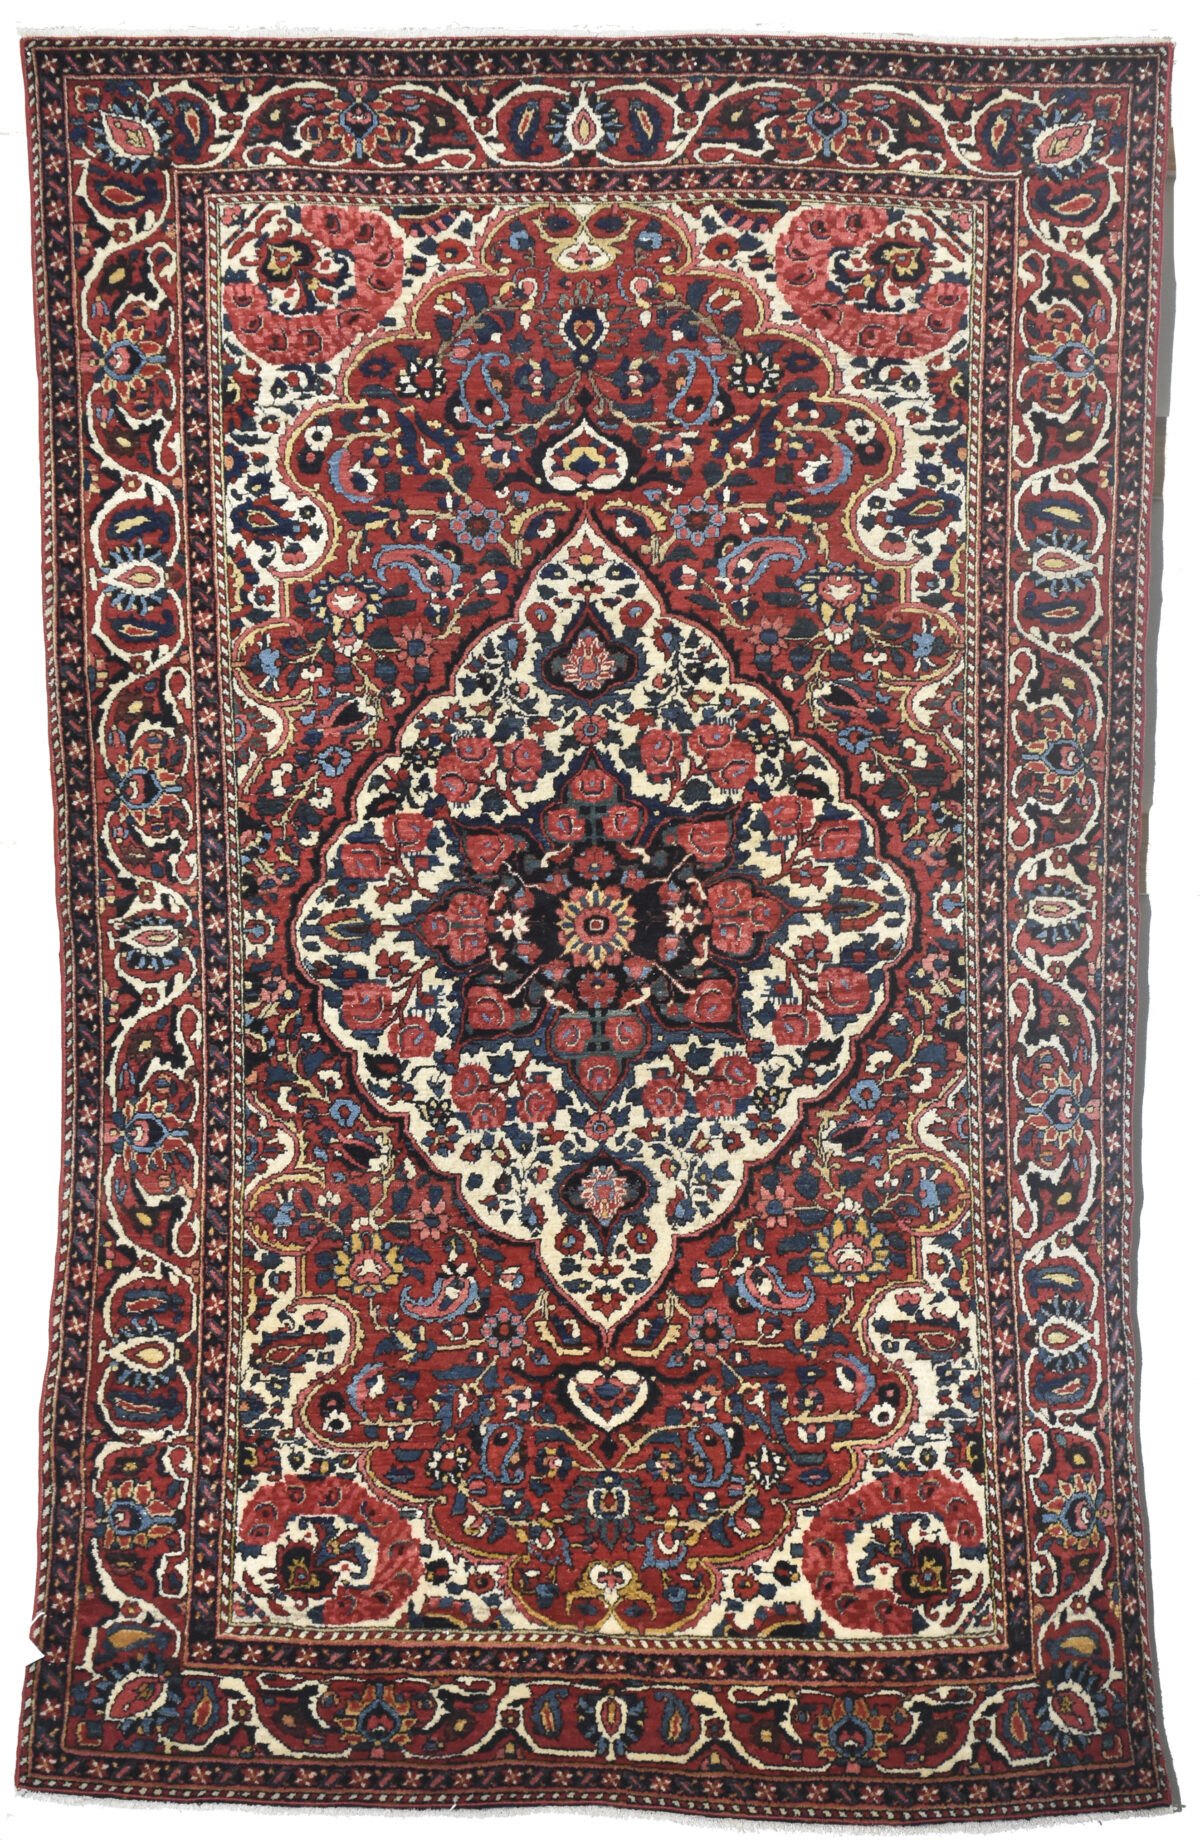 שטיח בטחטיאר בצבעי אדום בז' שחור וכחול